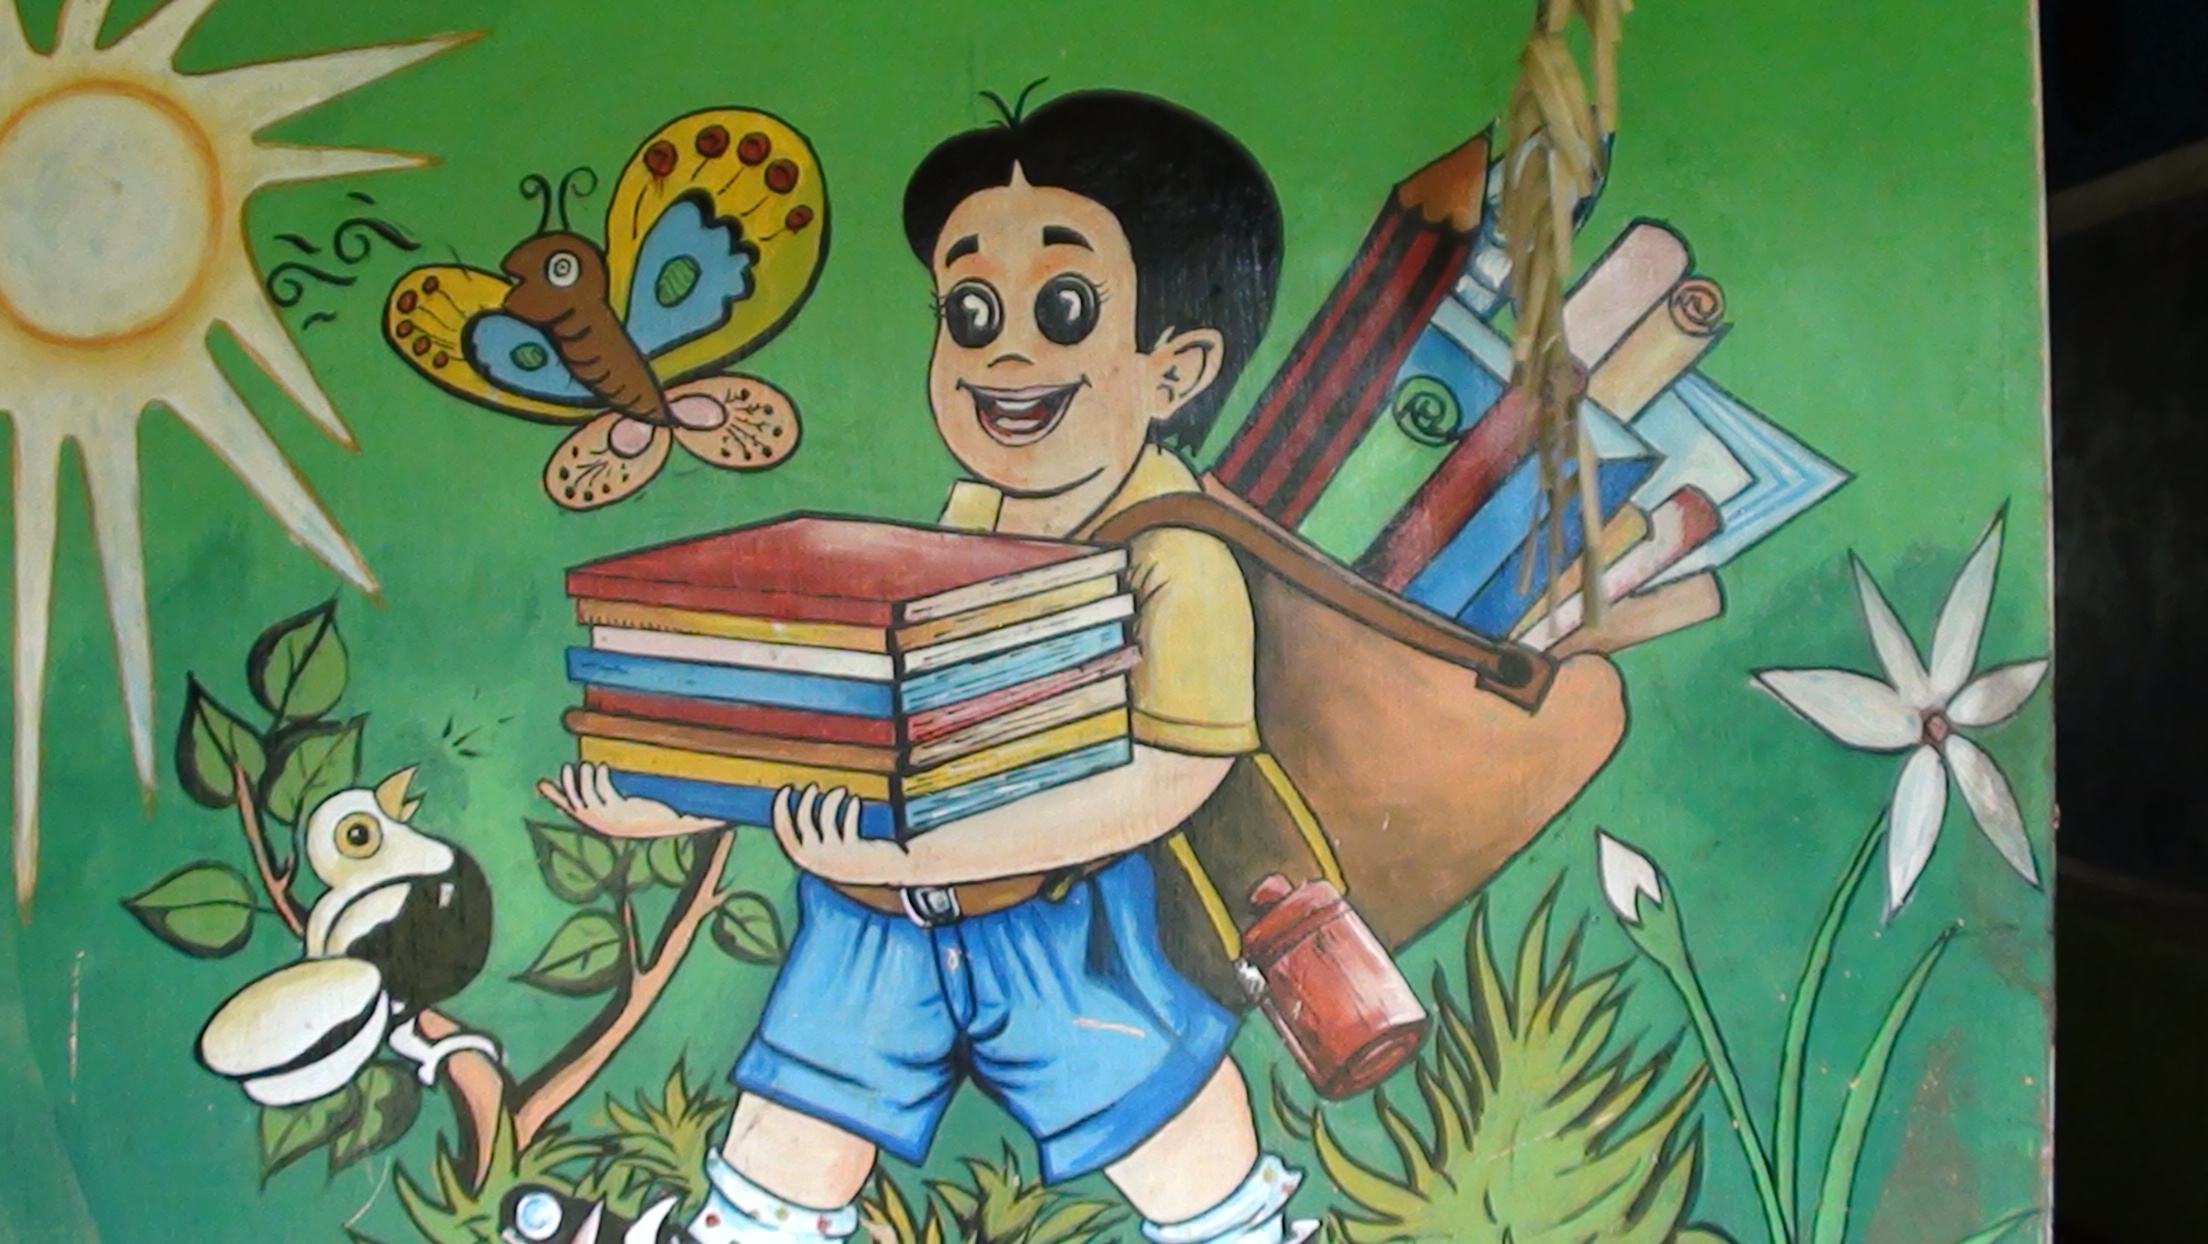 School mural